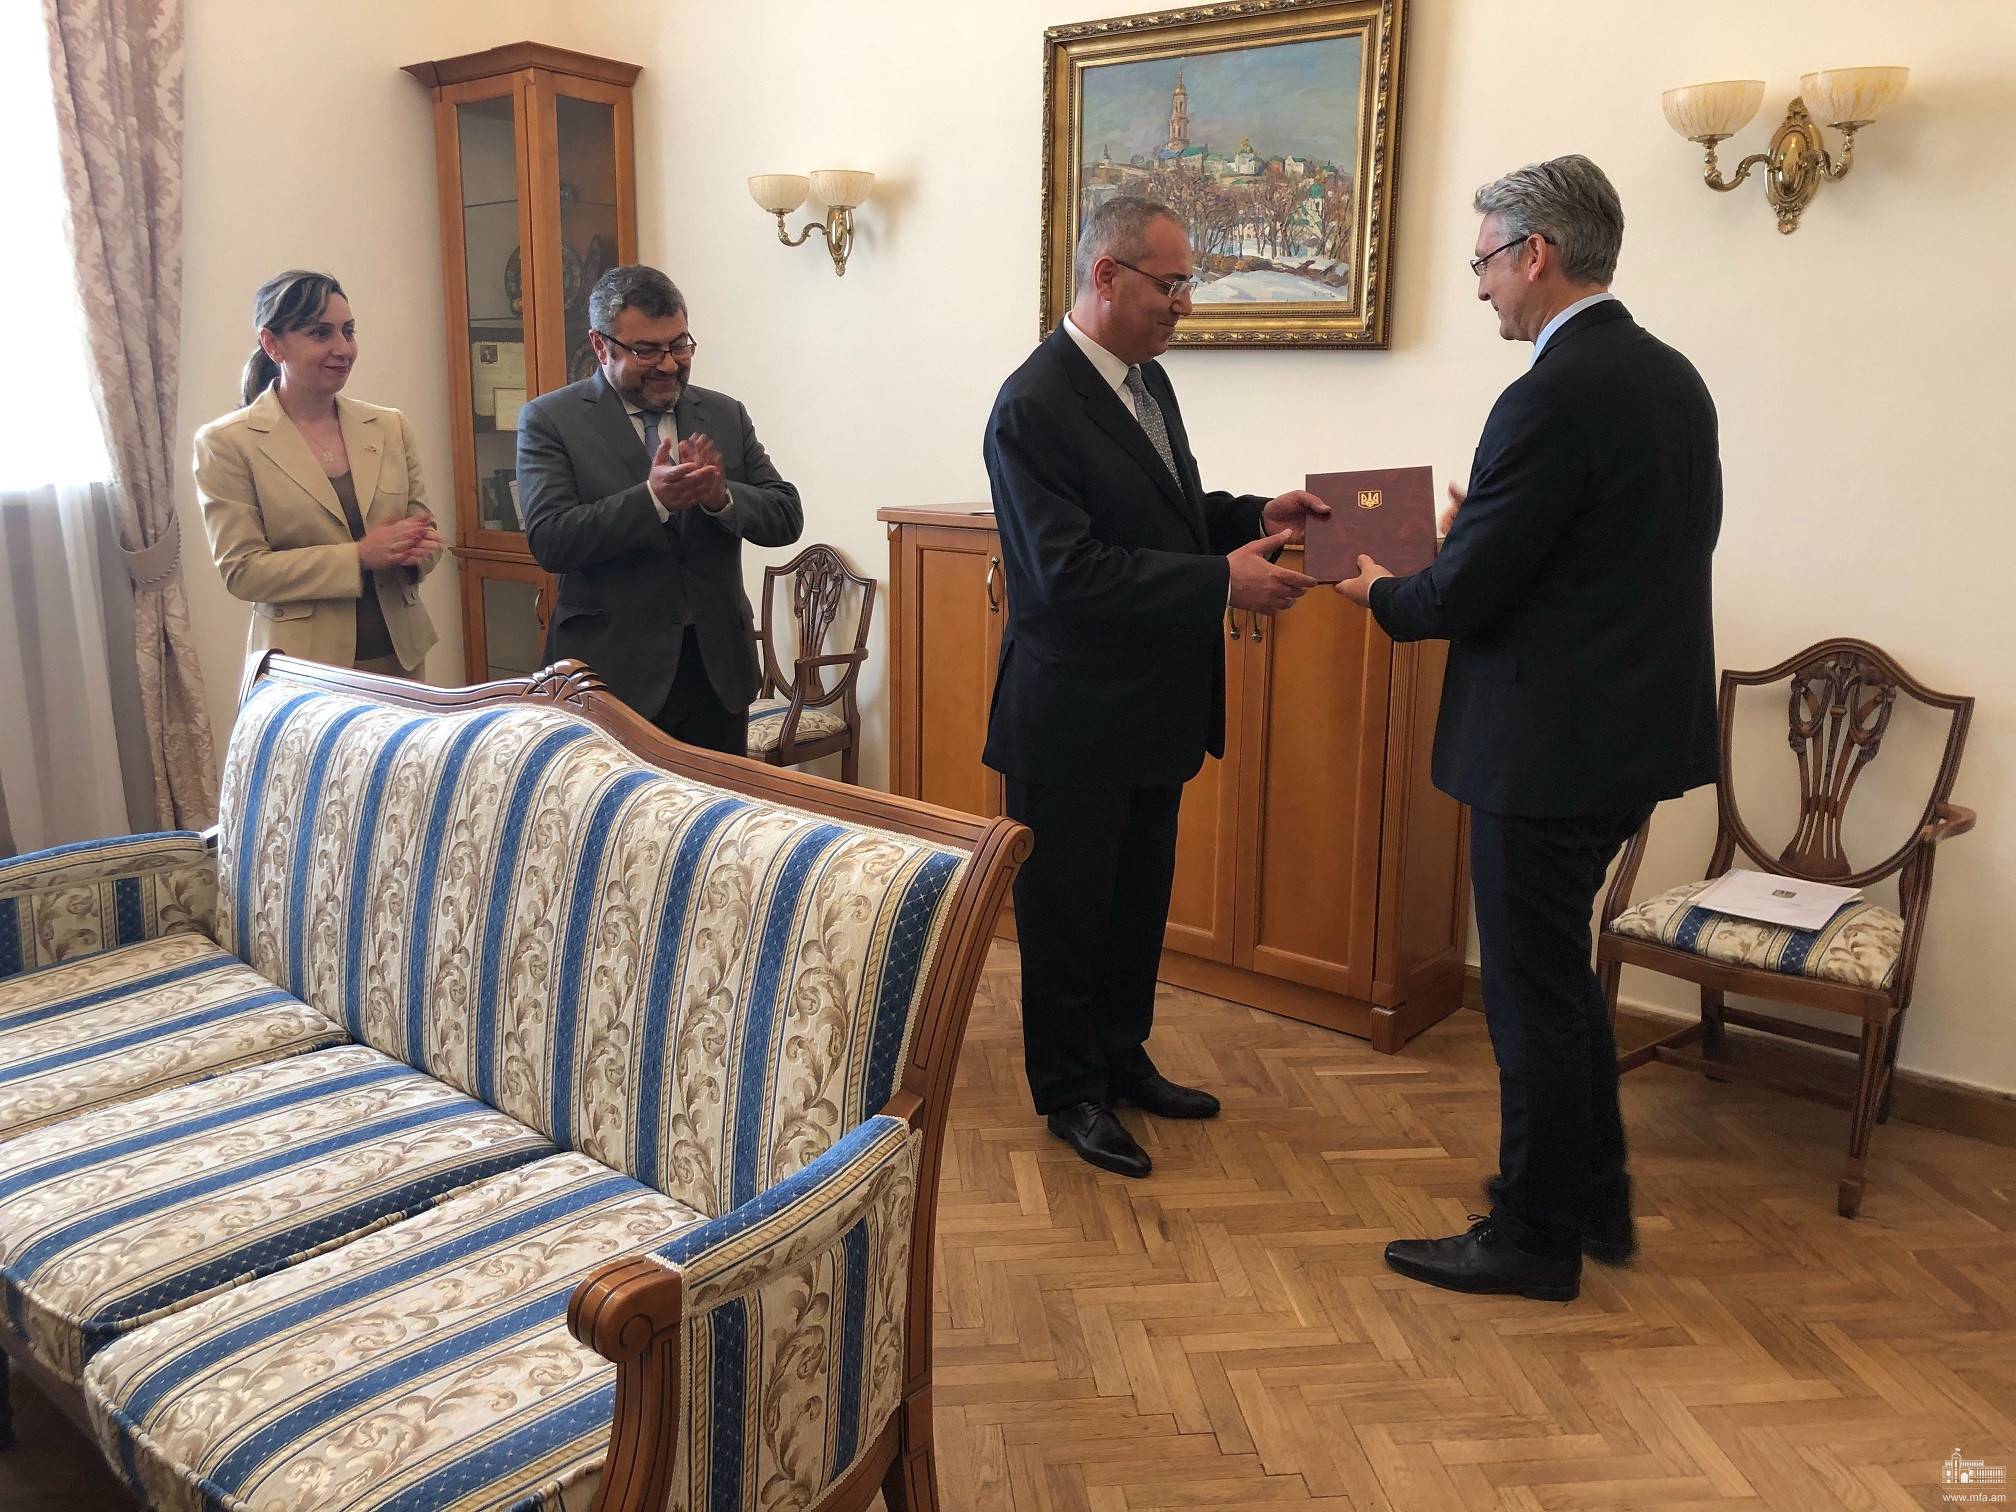 Օդեսայում Հայաստանի գլխավոր հյուպատոսը ստացավ իր էկզեկվատուրան